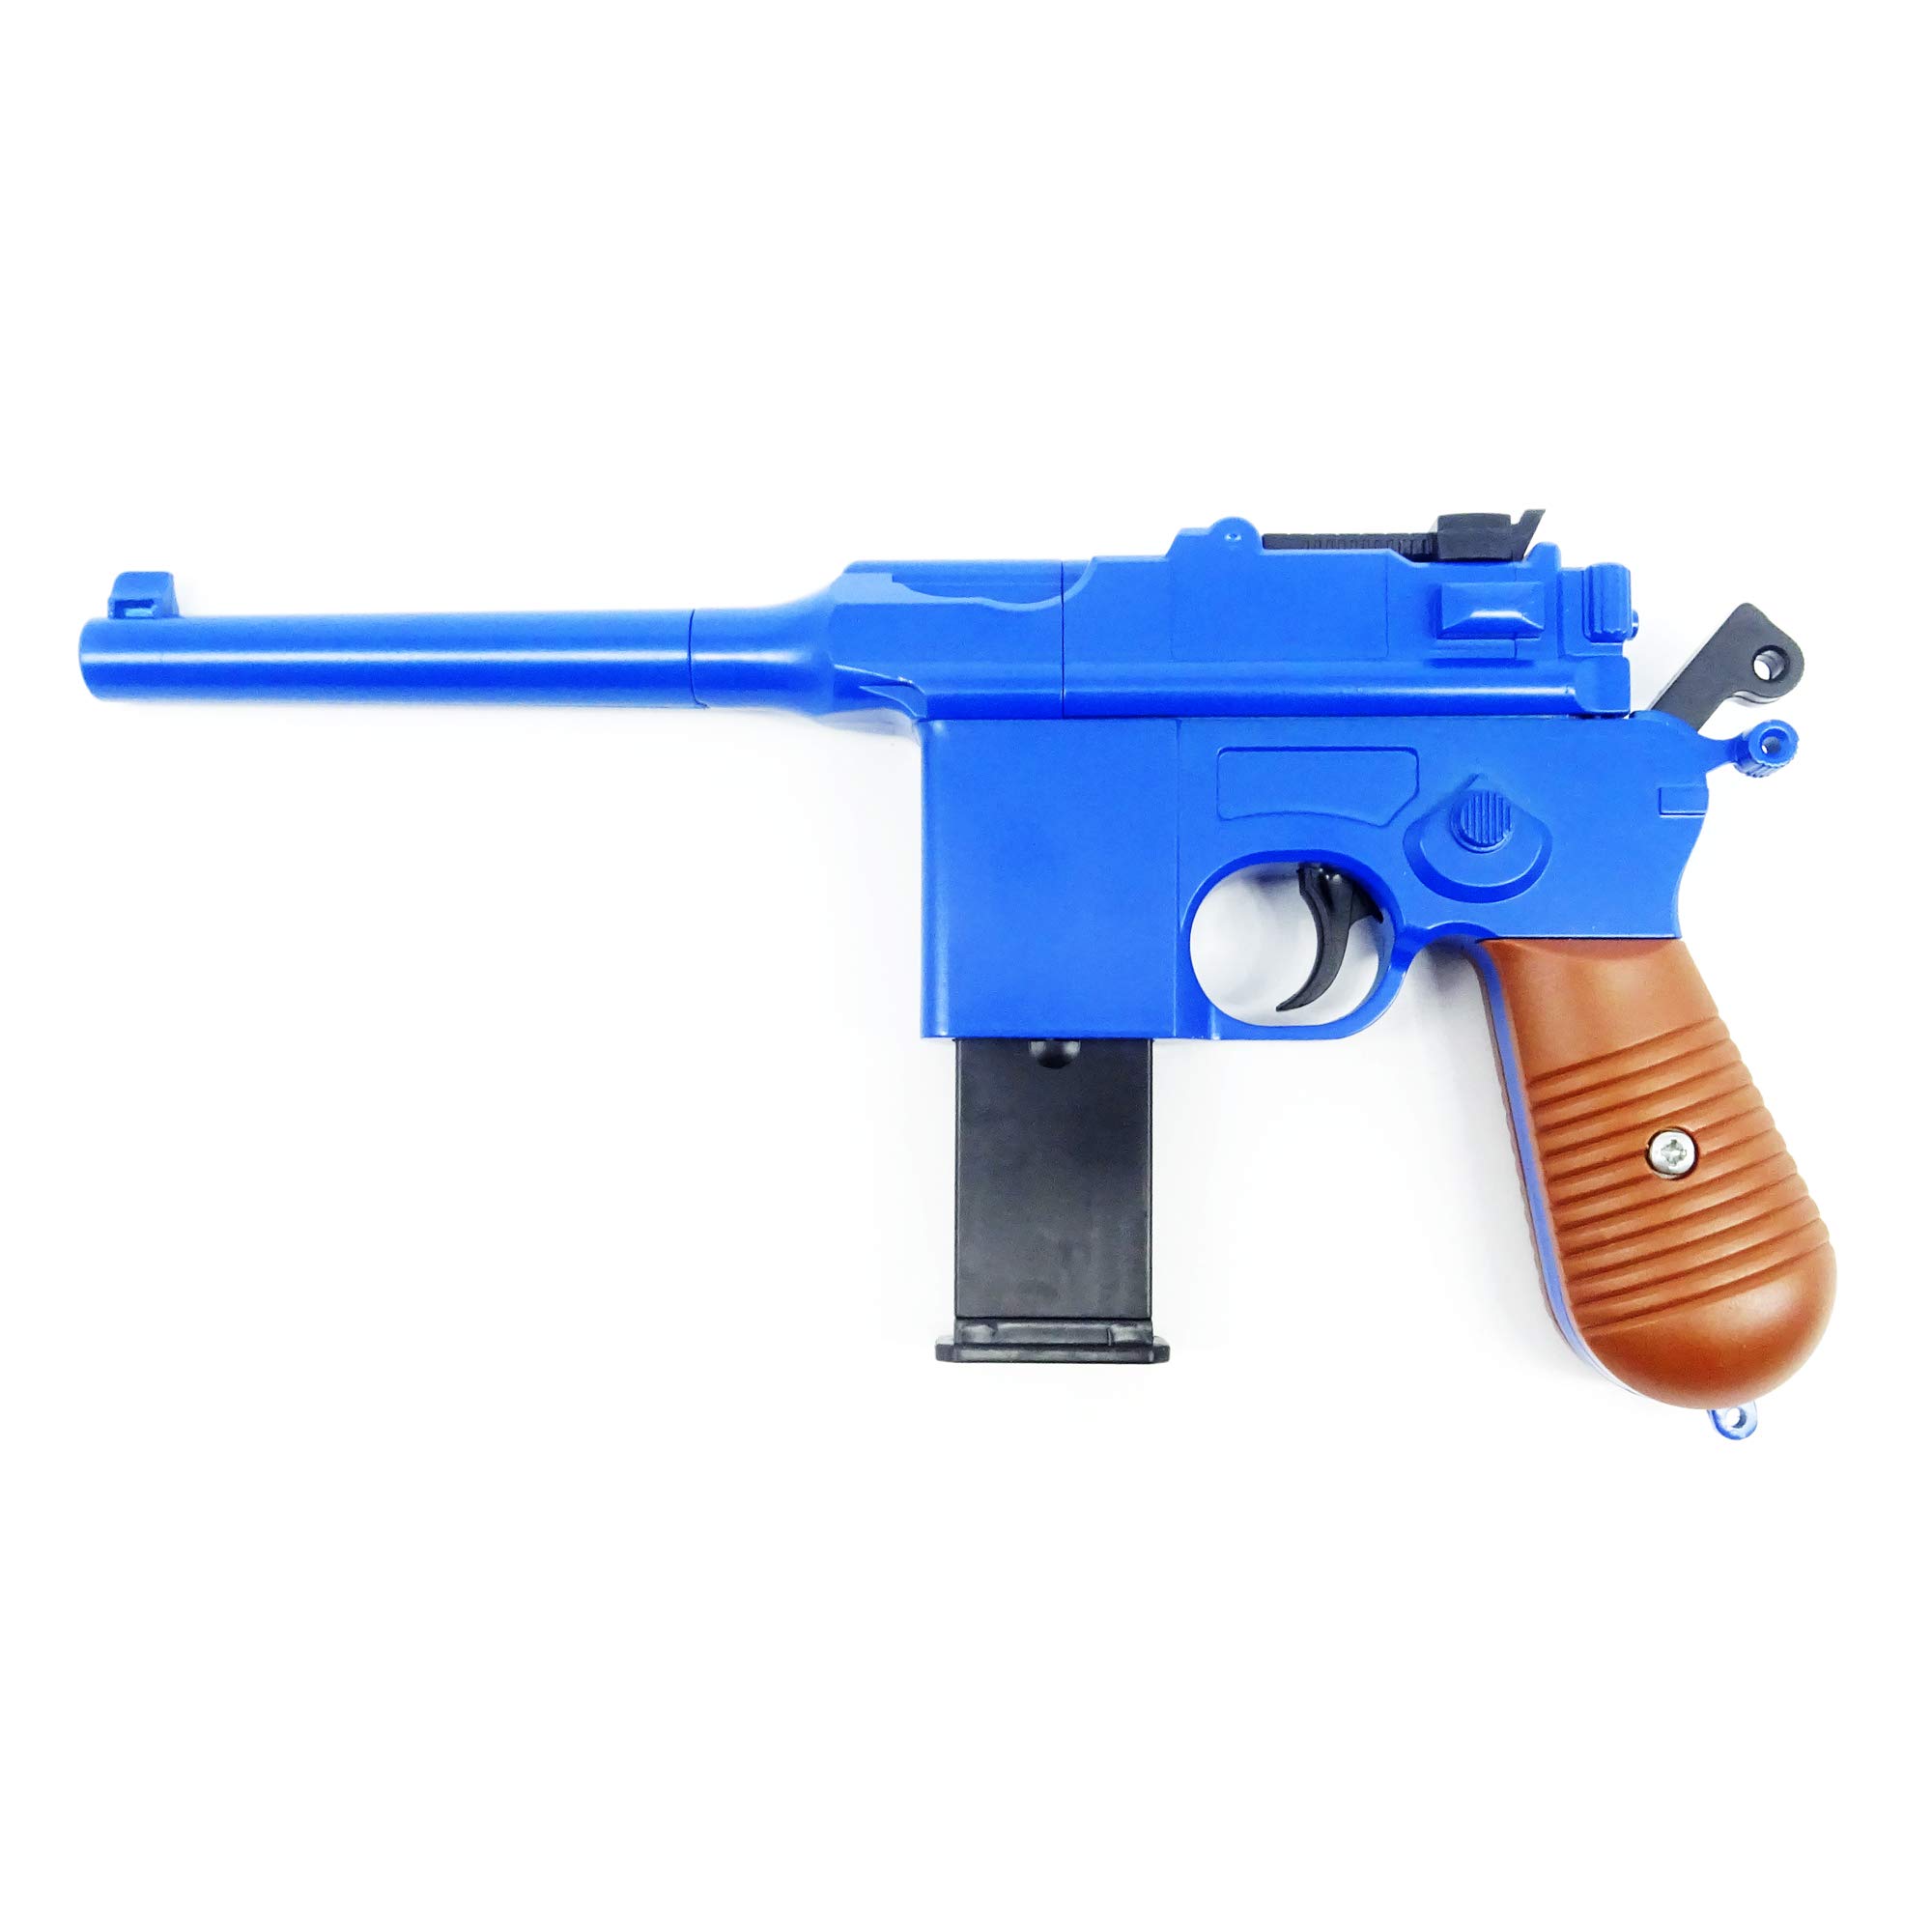 Softair Pistole Metall Rayline RV10 Blue, 1:1, Länge: 24,5cm, Gewicht: 360g, Kaliber: 6mm, Farbe: blau - (unter 0,5 Joule - ab 14 Jahre)